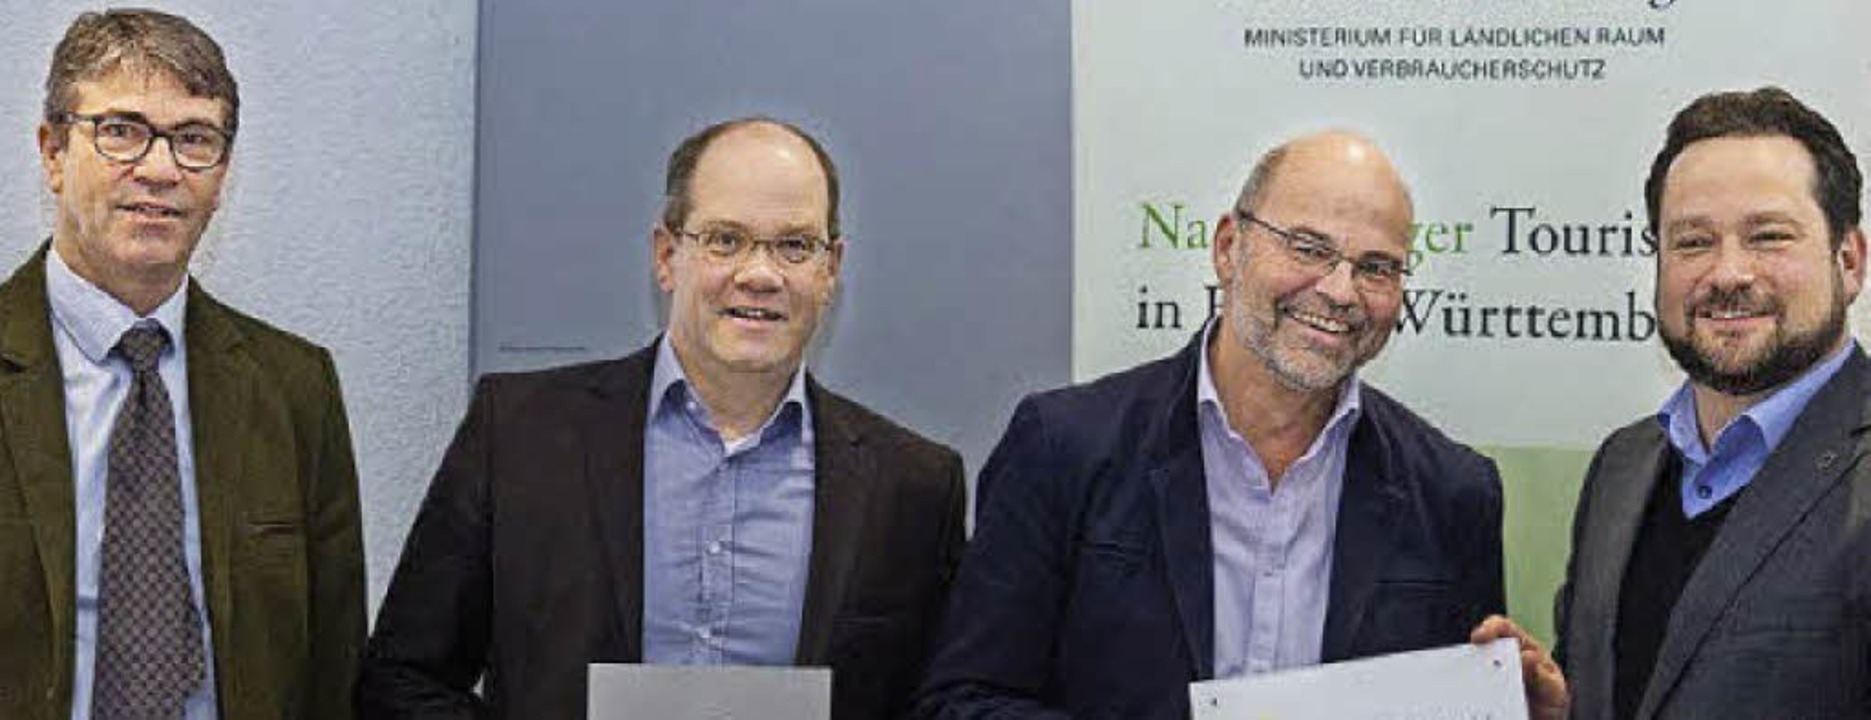 Landesminister Alexander Bonde mit Vol...r vom Radon Revital Bad (von rechts).   | Foto: Jochen Leuschner